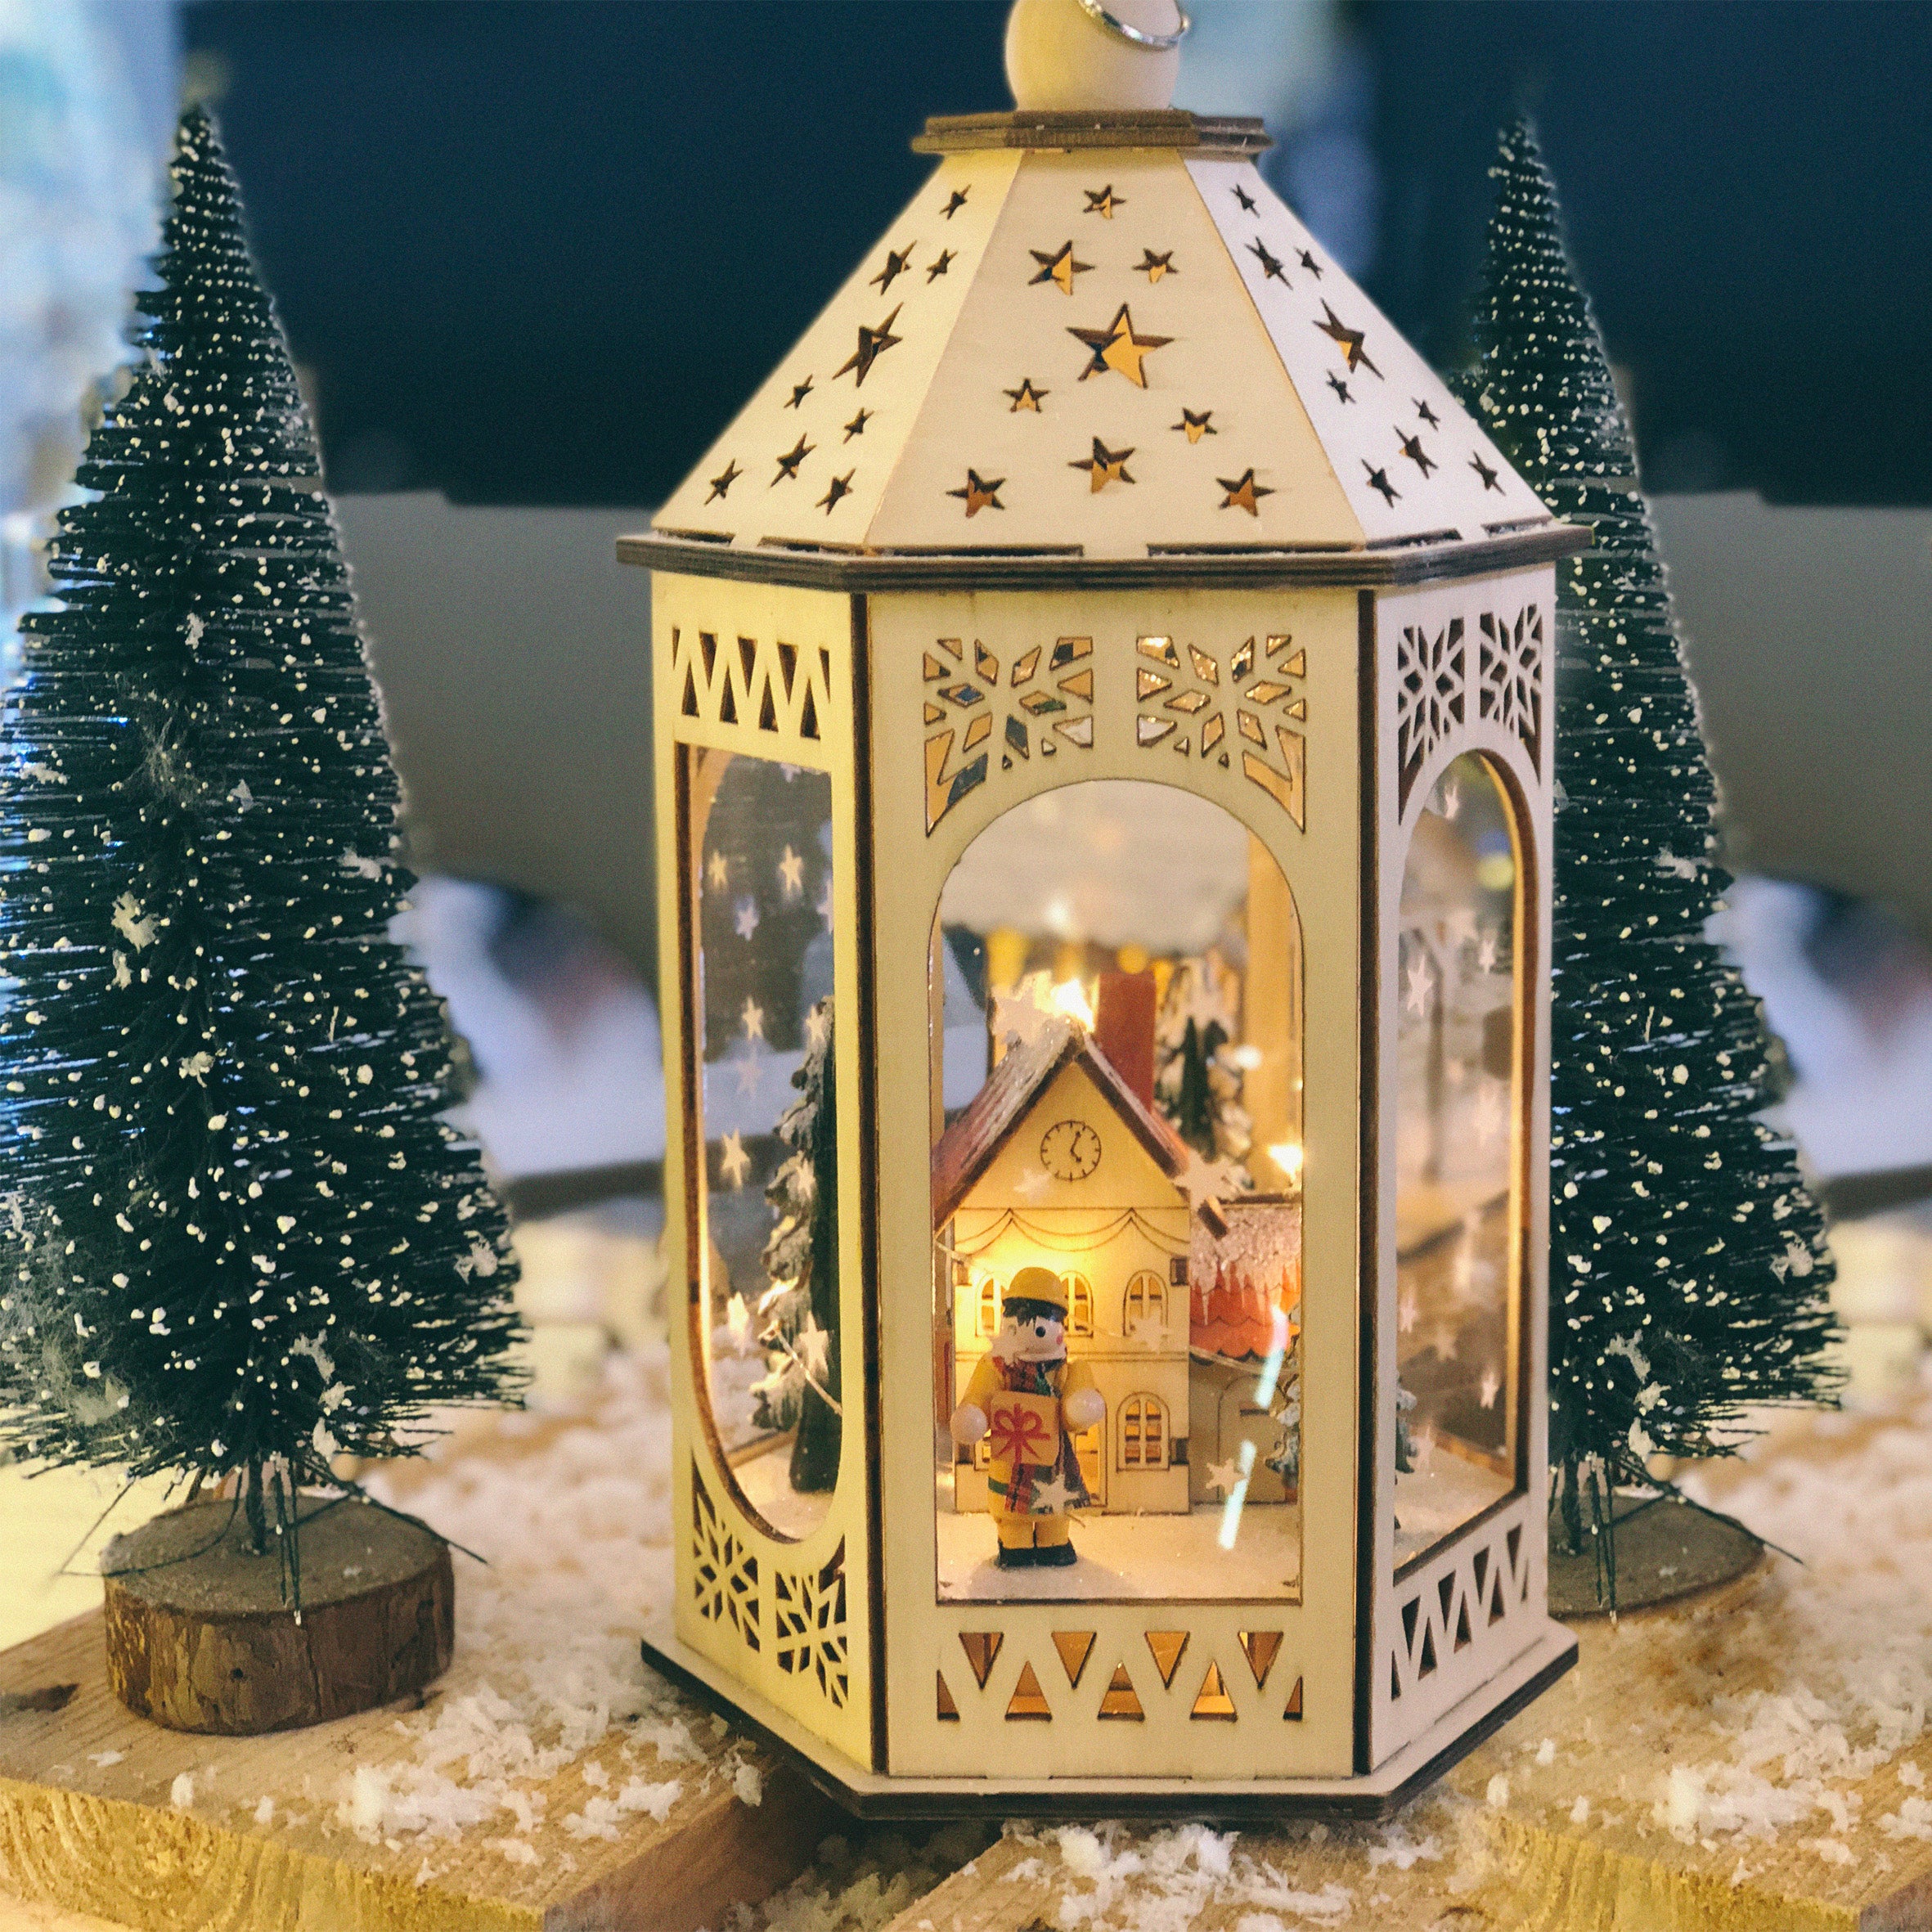 Christmas lantern / Lanterne de Noël